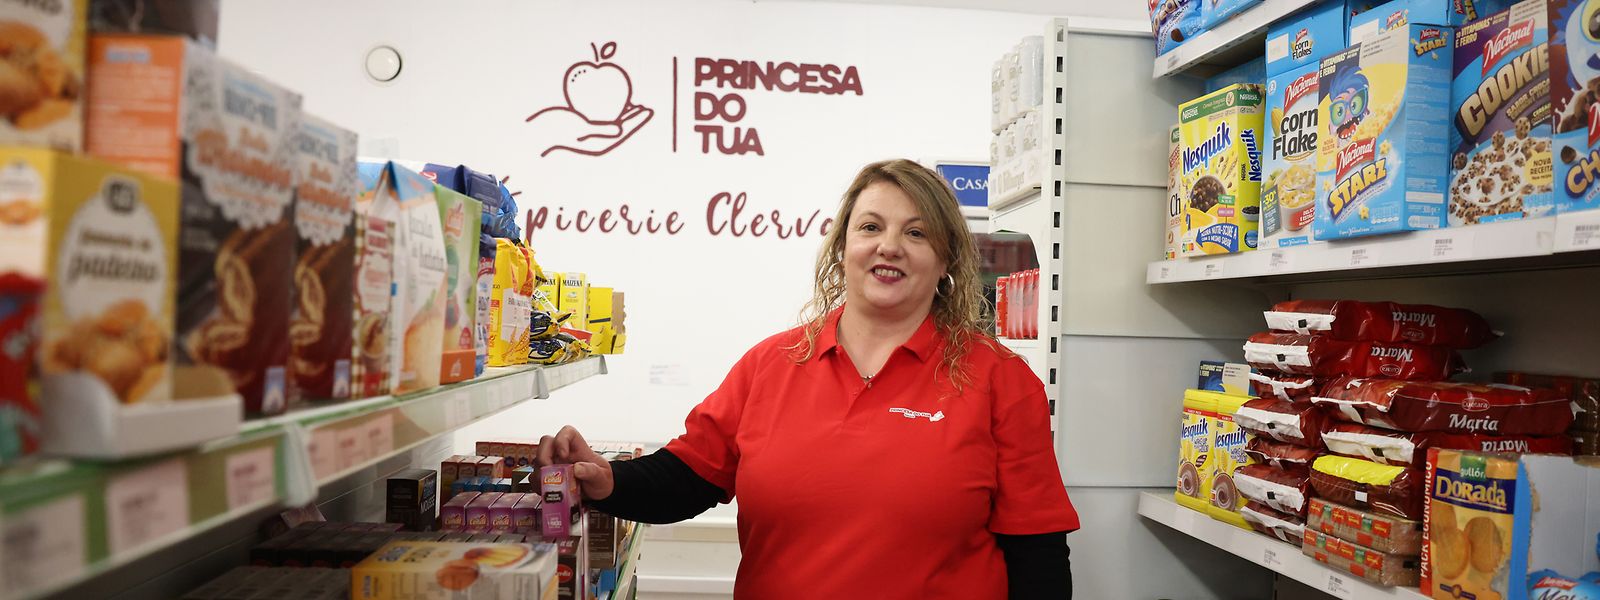 Maria da Luz Pires, de Mirandela, é proprietária da mercearia Princesa do Tua há um ano.